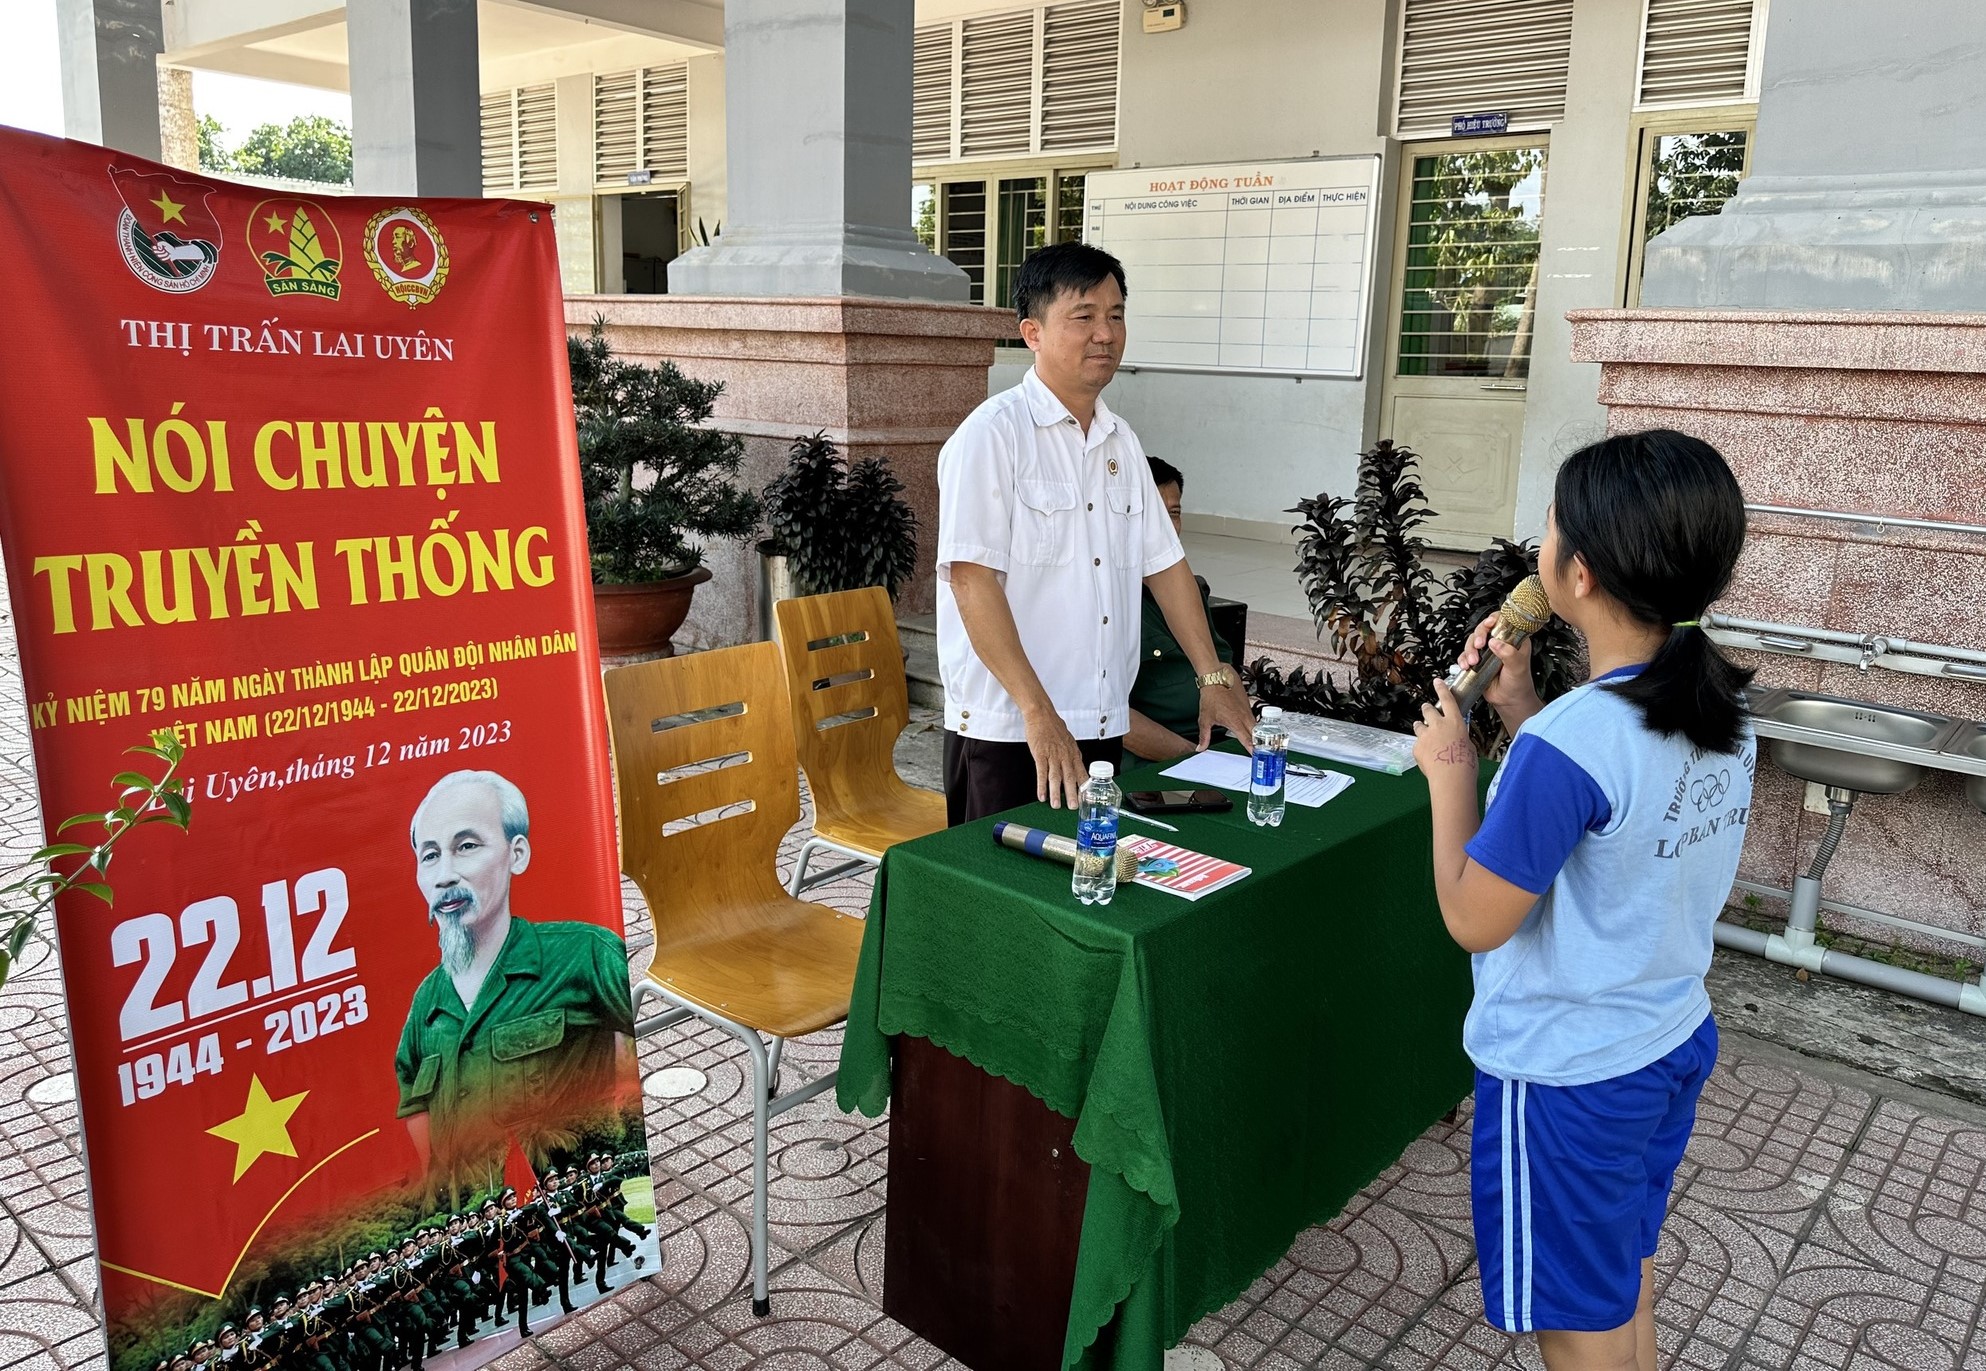 Nói chuyện truyền thống nhân kỷ niệm ngày thành lập Quân đội Nhân dân Việt Nam và ngày hội Quốc phòng toàn dân